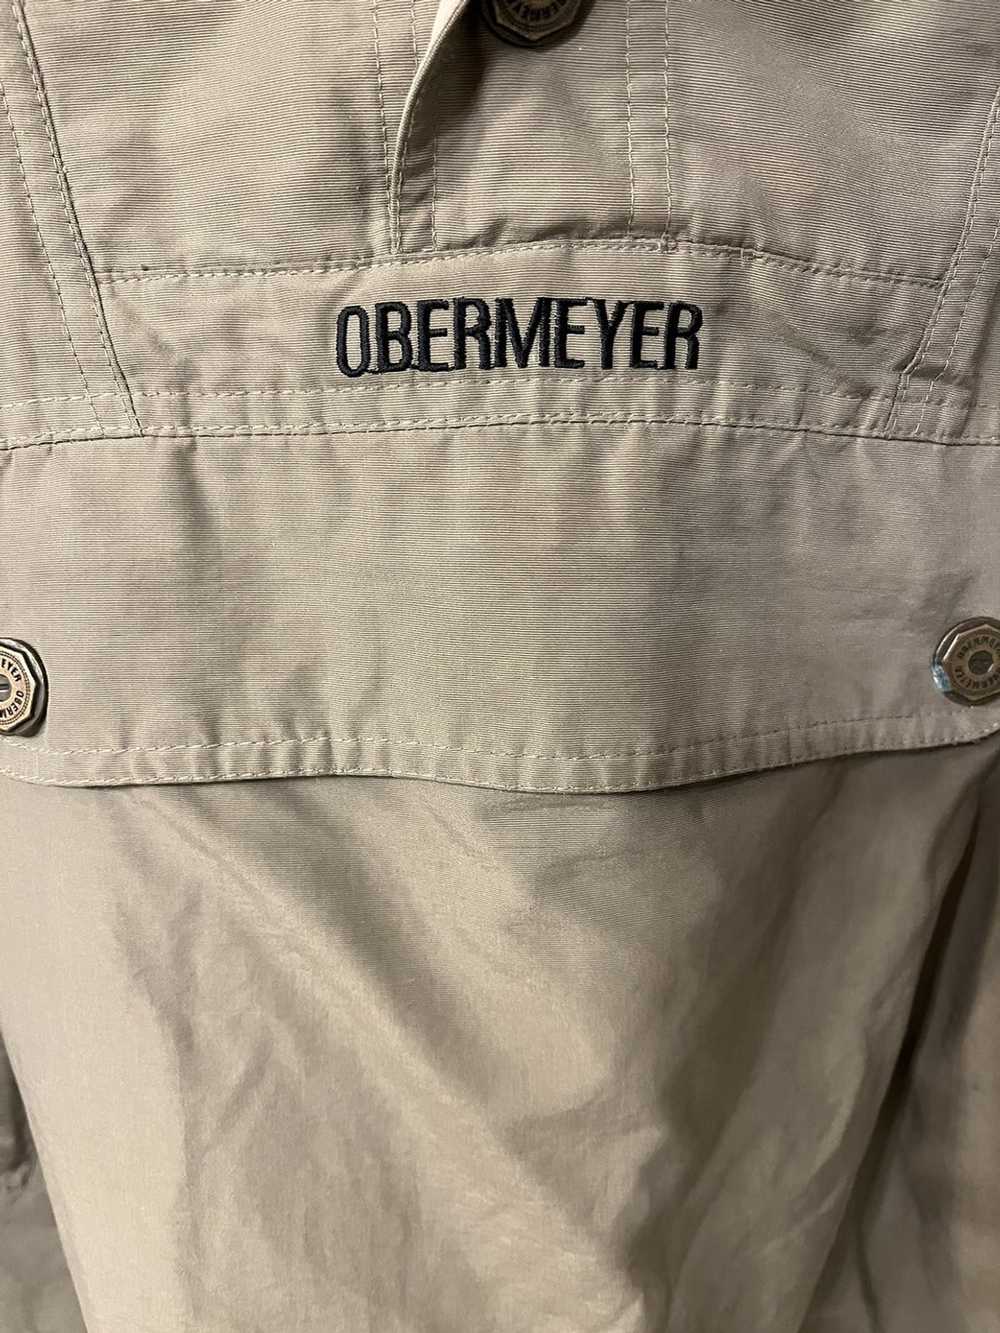 Obermeyer Two layered vintage Obermeyer jacket - image 2